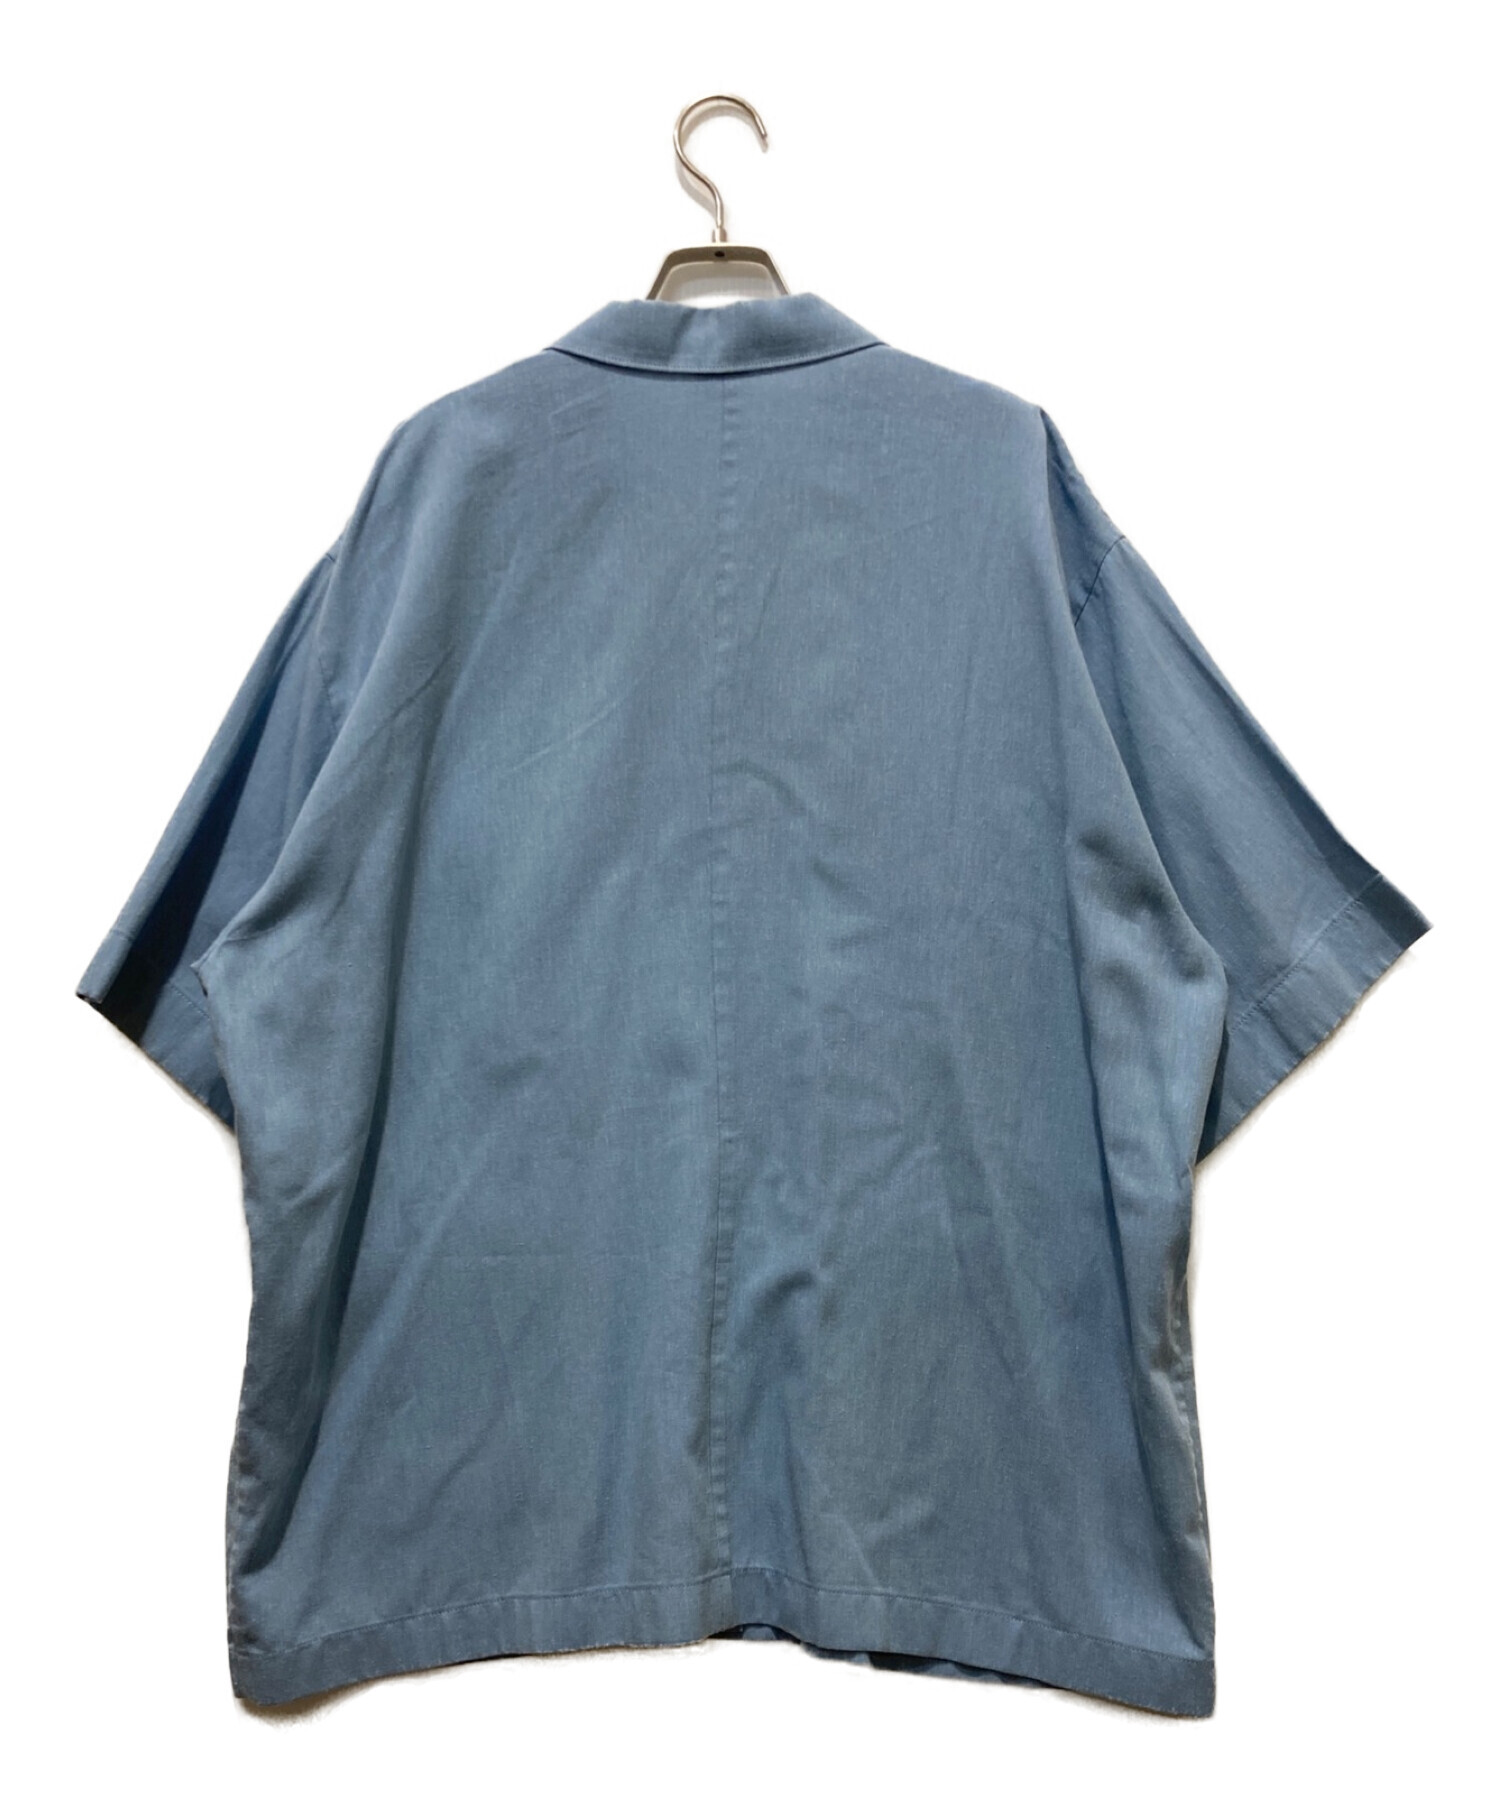 6(ROKU) BEAUTY&YOUTH (ロク ビューティーアンドユース) ポケットカバーオールシャツ サイズ:38